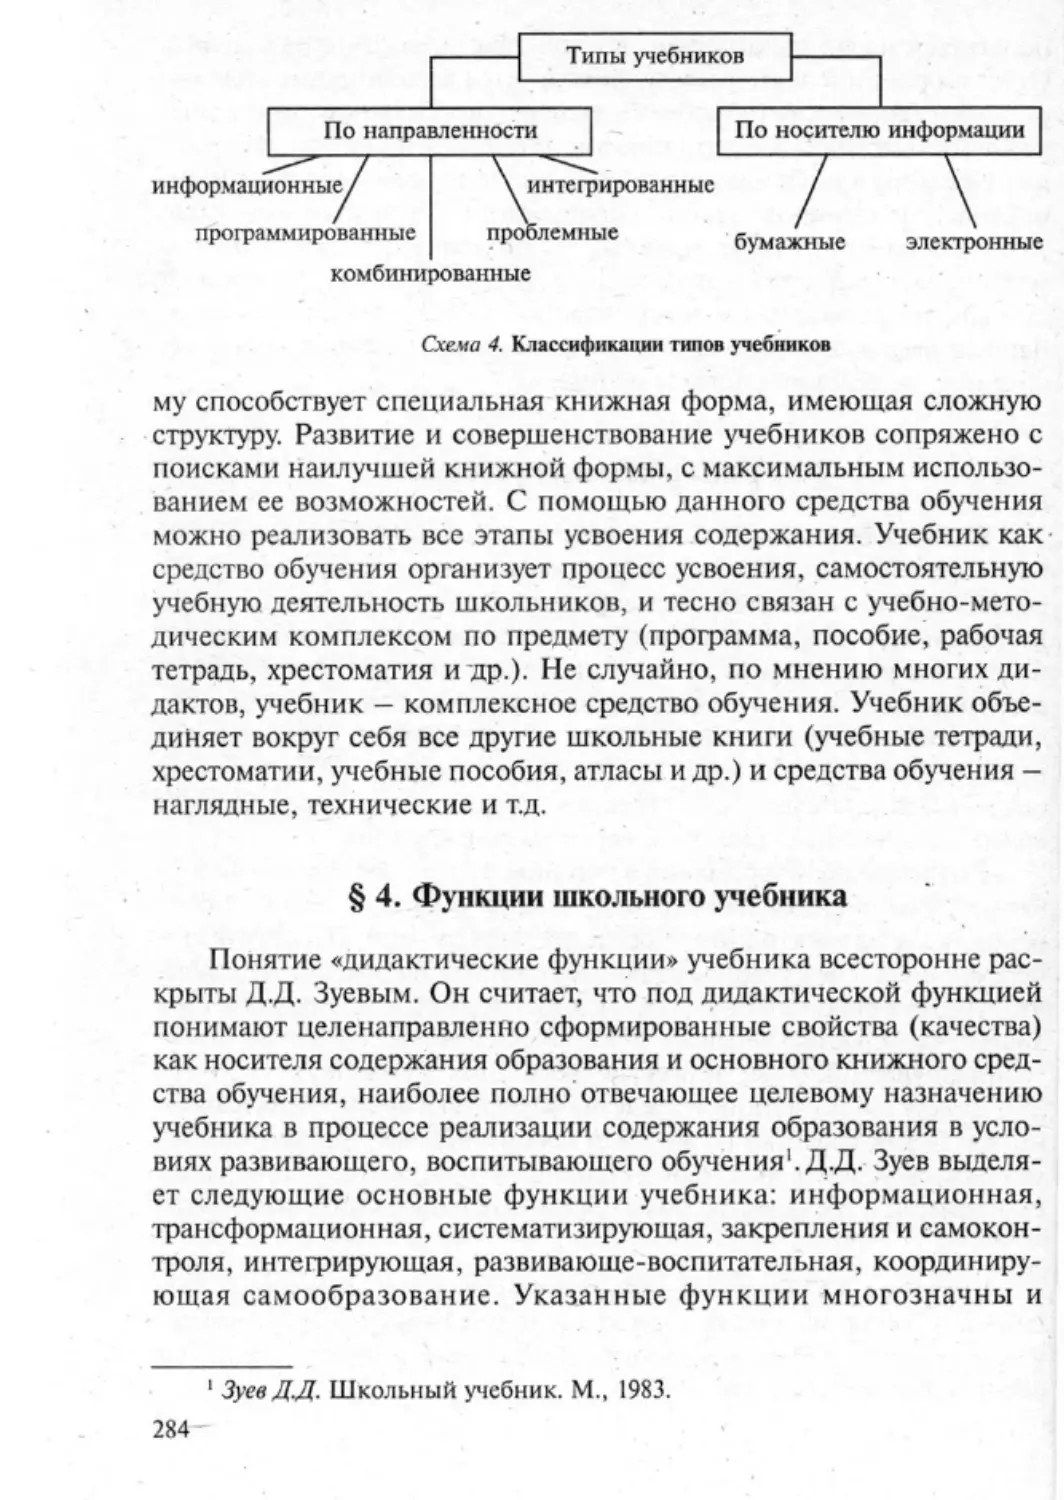 Загрекова Л.В., Николаева В.В - 0285